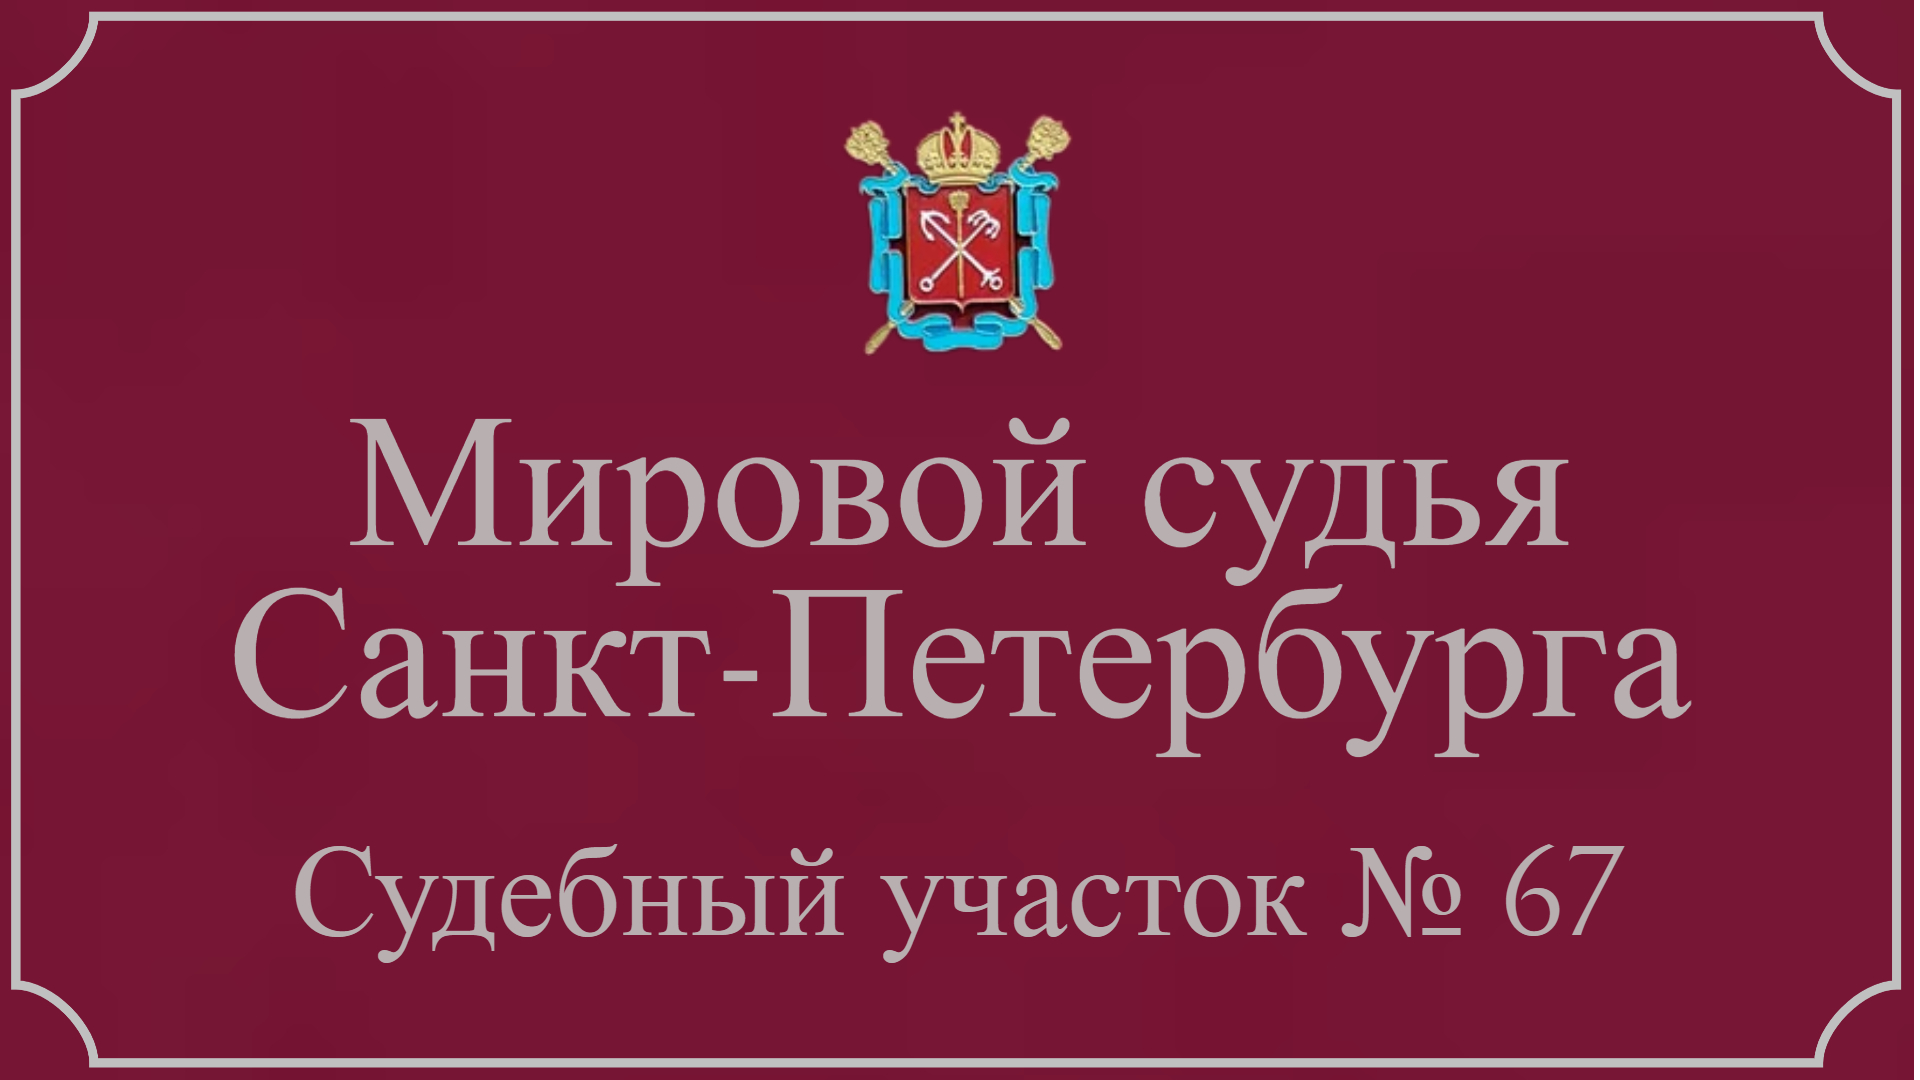 Информация по 67 судебному участку в Санкт-Петербурге.